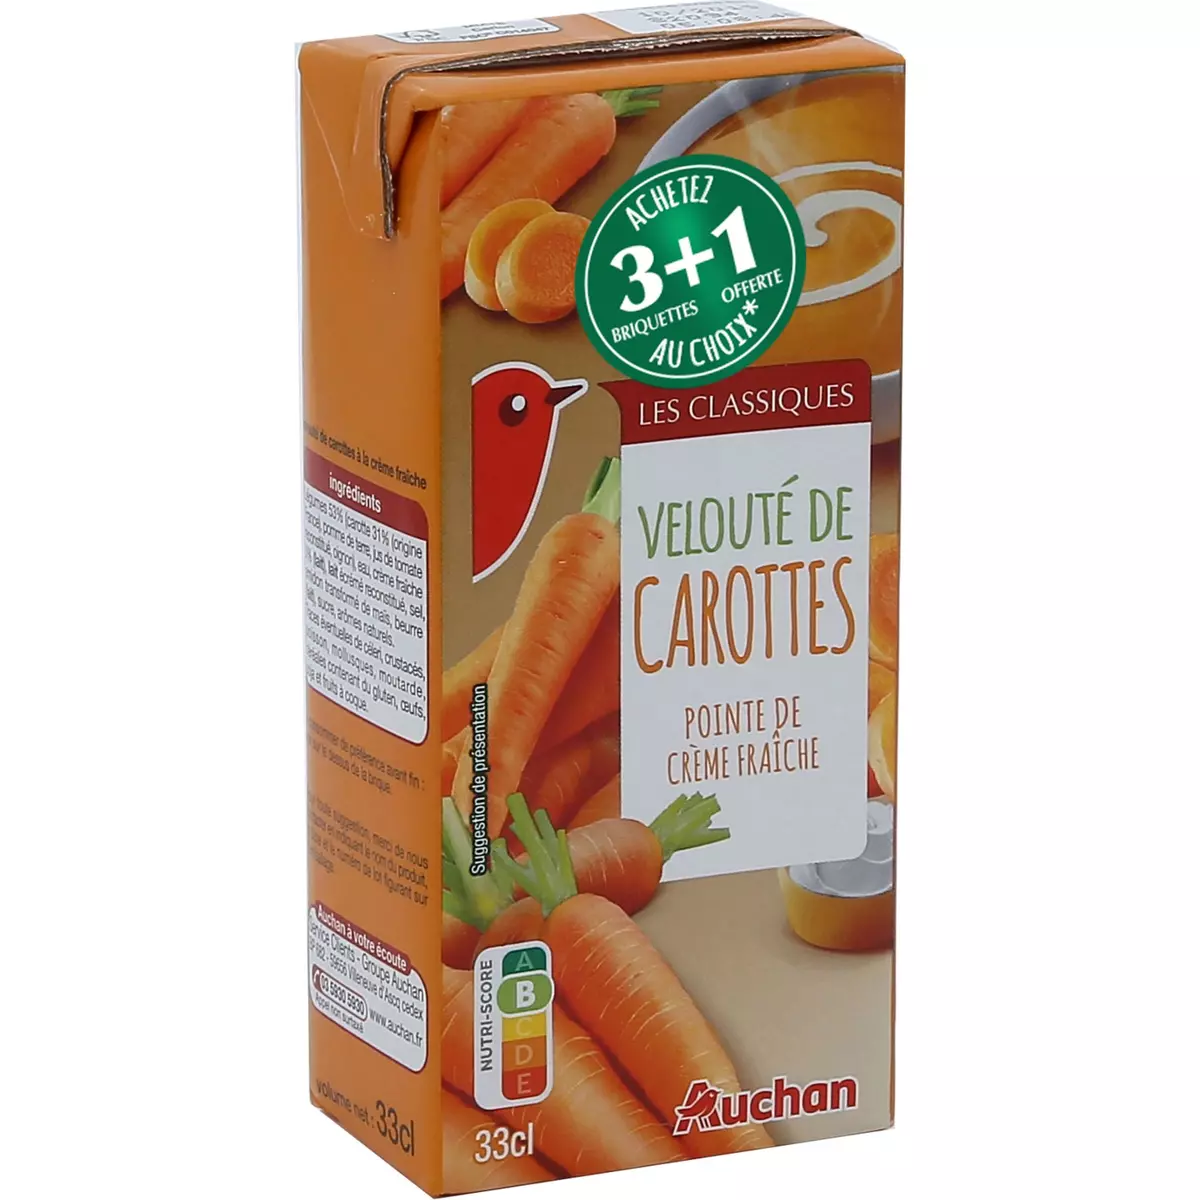 AUCHAN Velouté de carottes et pointe de crème fraîche 1 personne 33cl